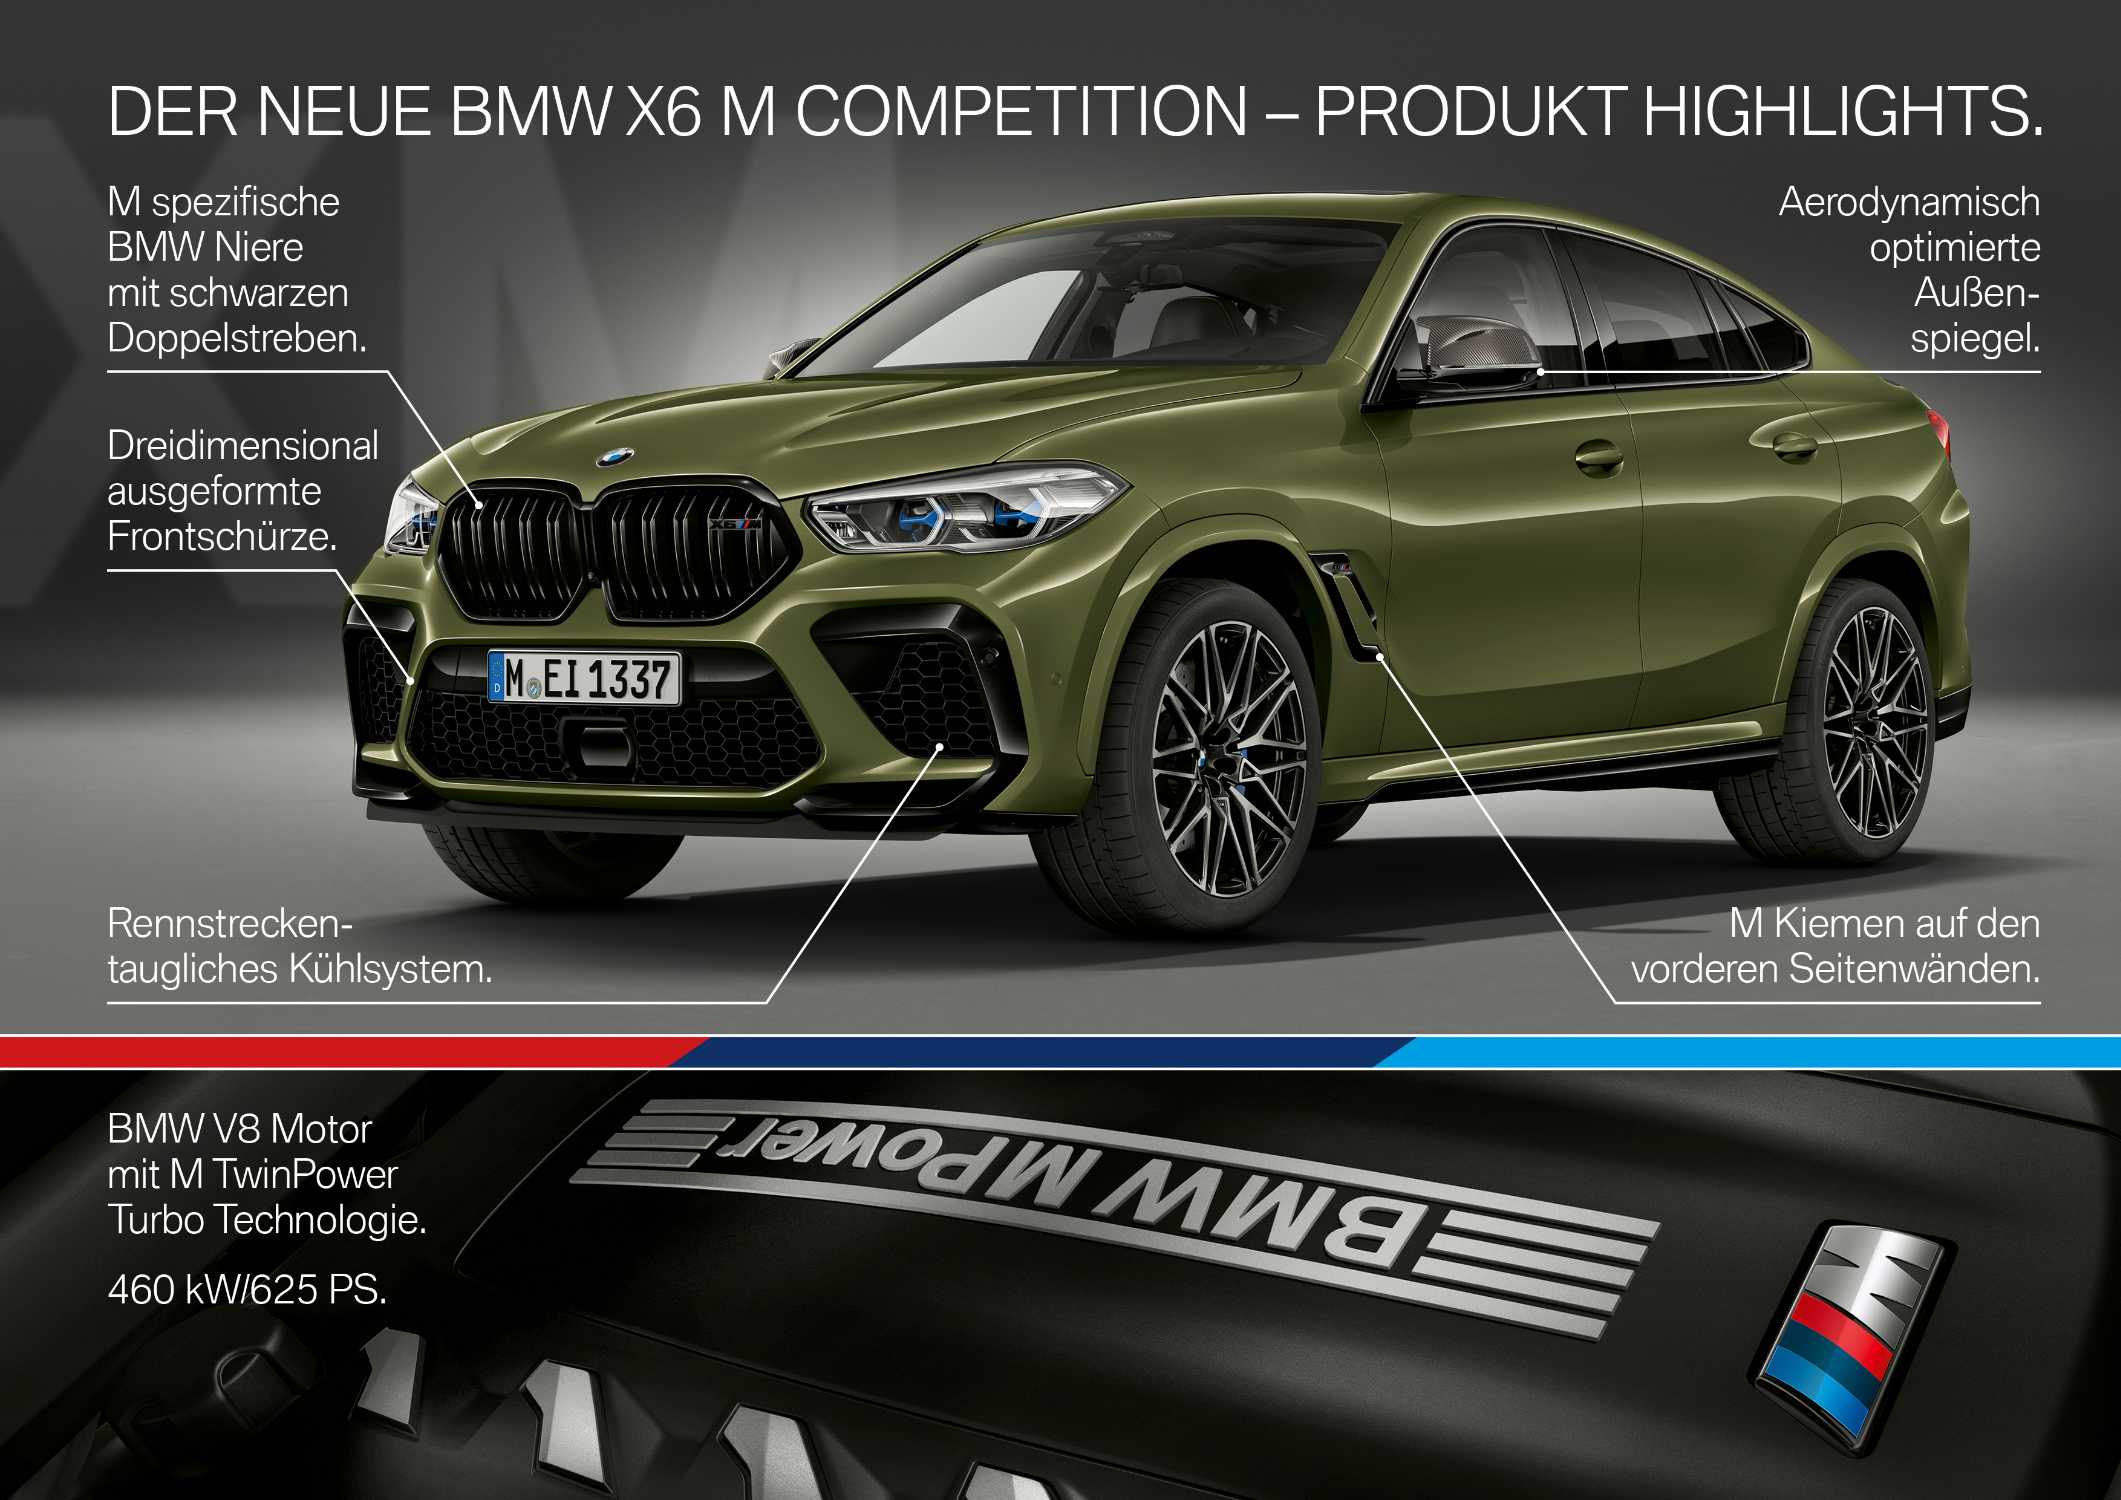 Der neue BMW X6 M und BMW X6 M Competition. (10/2019)